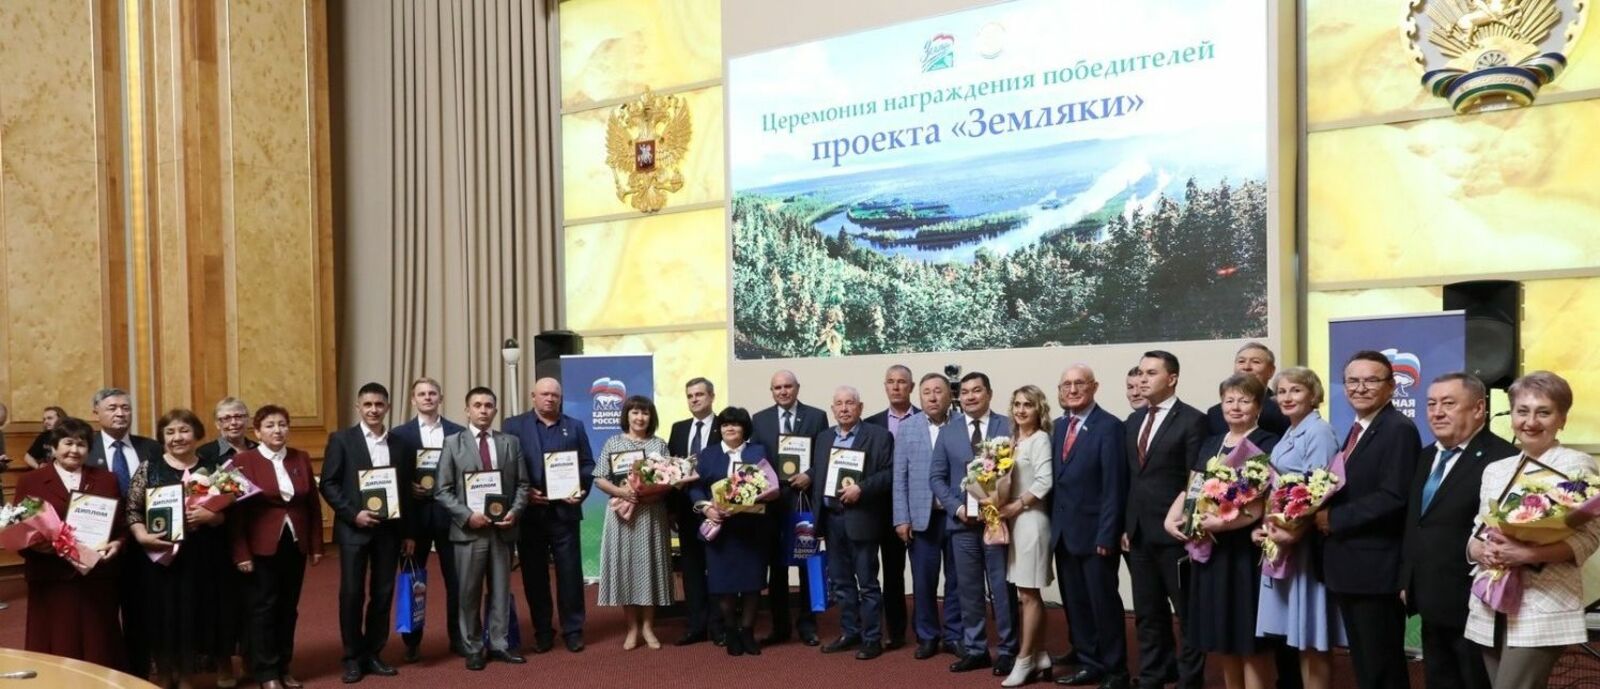 В Башкирии награды вручили победителям проектов «Атайсал» и «Земляки»